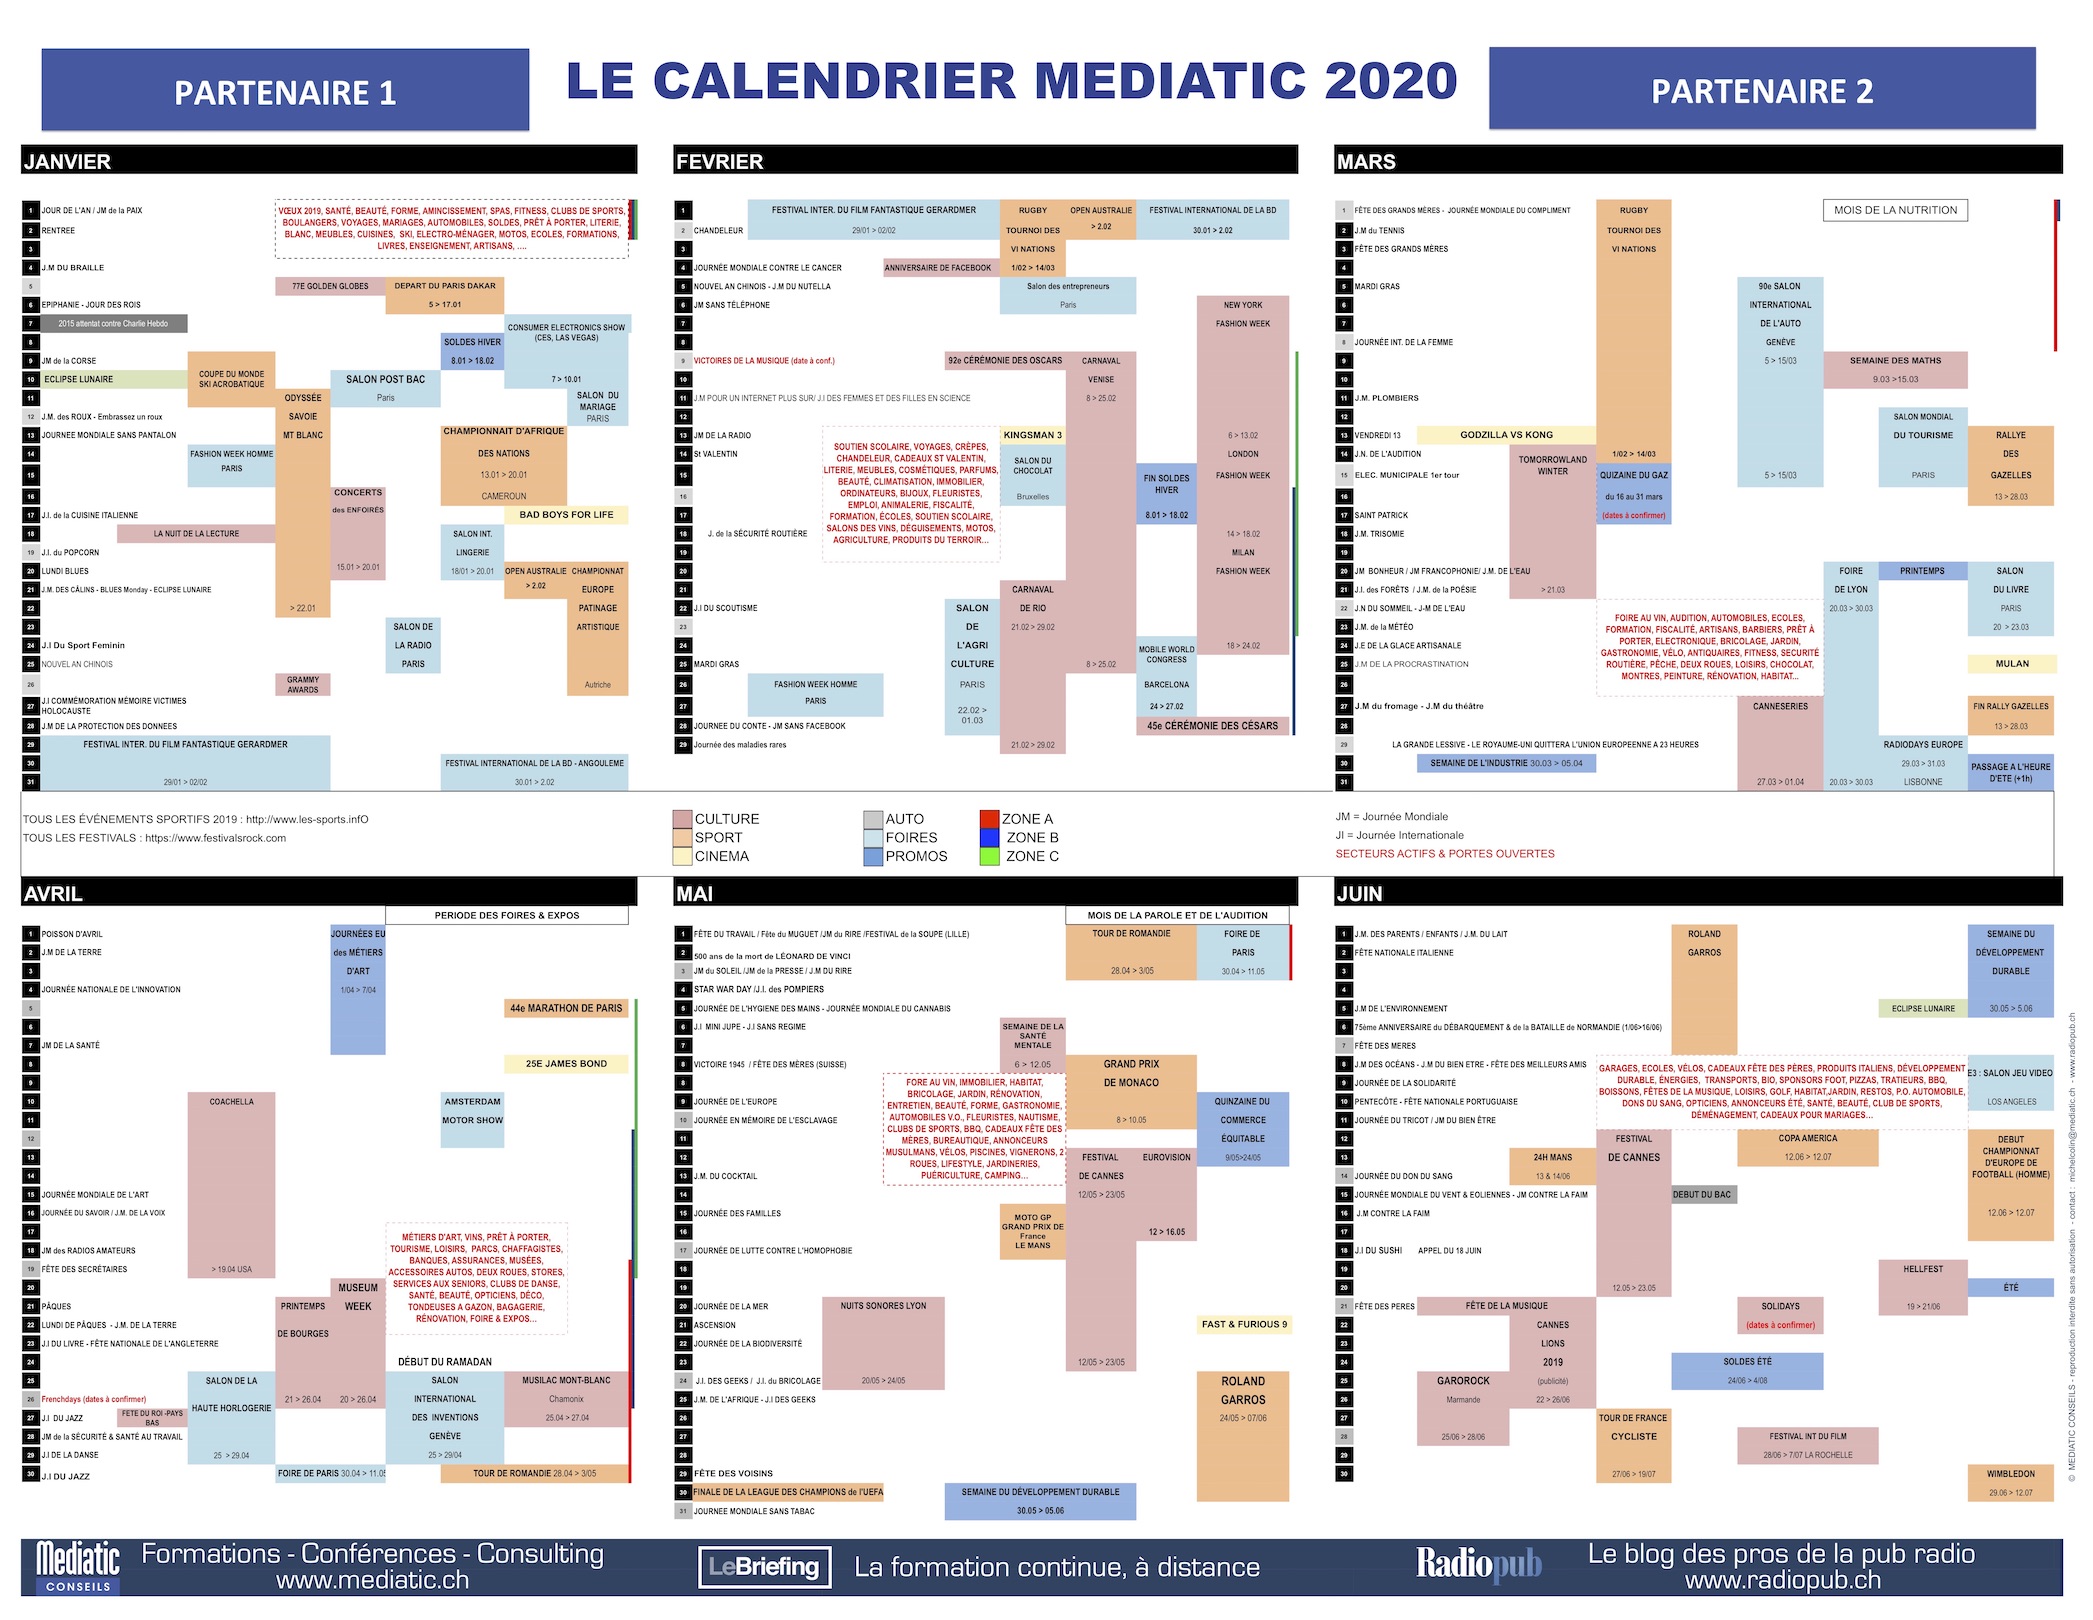 Devenez le partenaire exclusif du calendrier Mediatic 2020